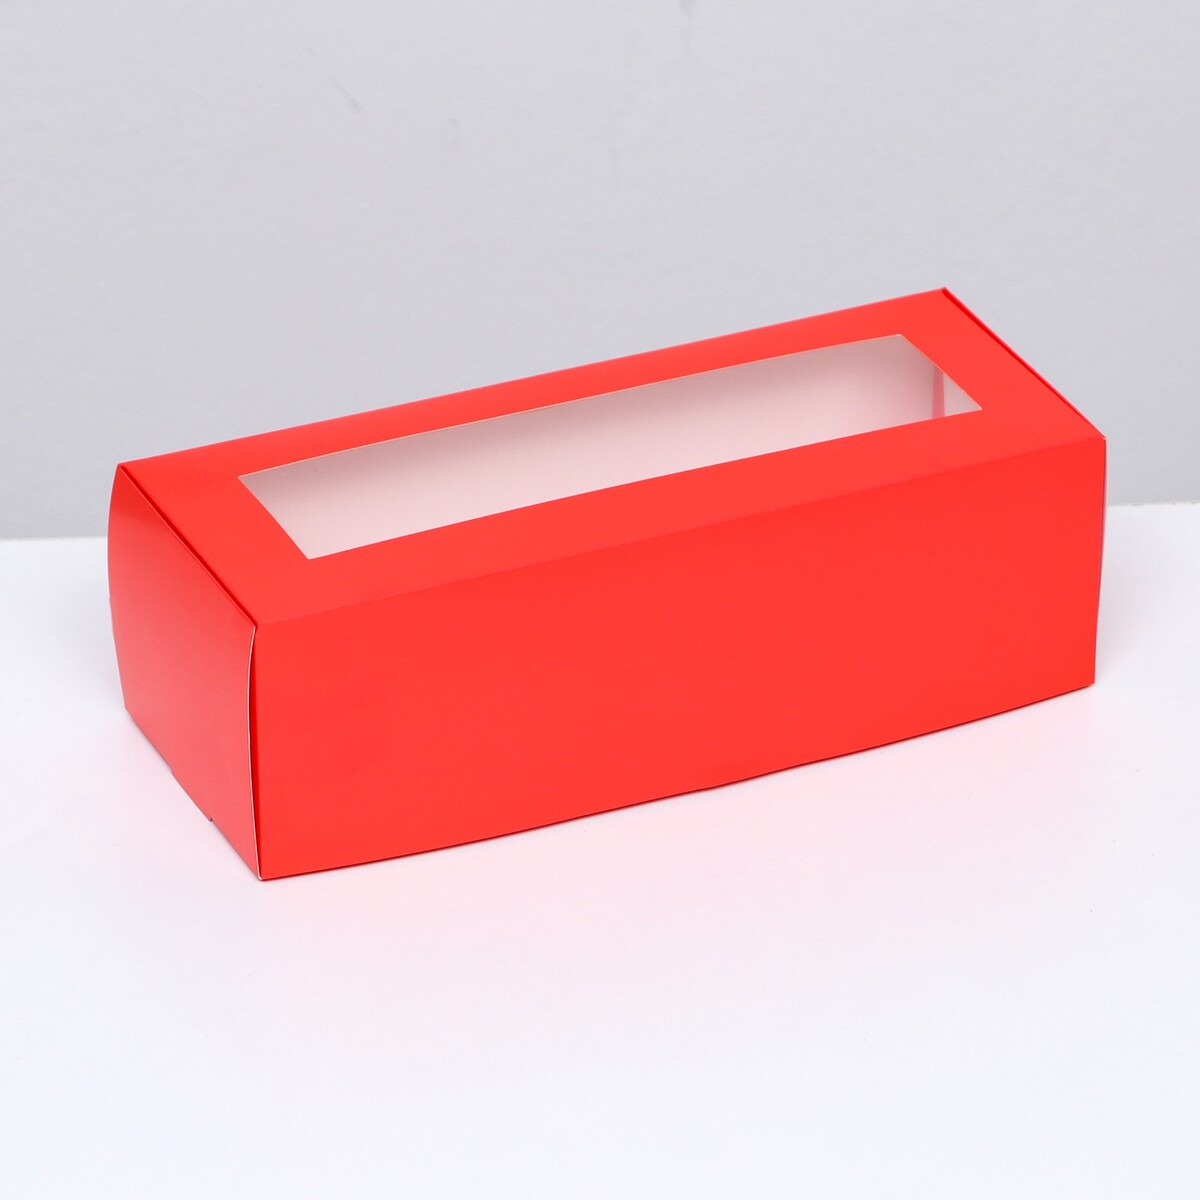 Коробка складная с окном под рулет, красная, 26 х 10 х 8 см коробка под рулет с ручками белая 16 5 х 11 х 10 см